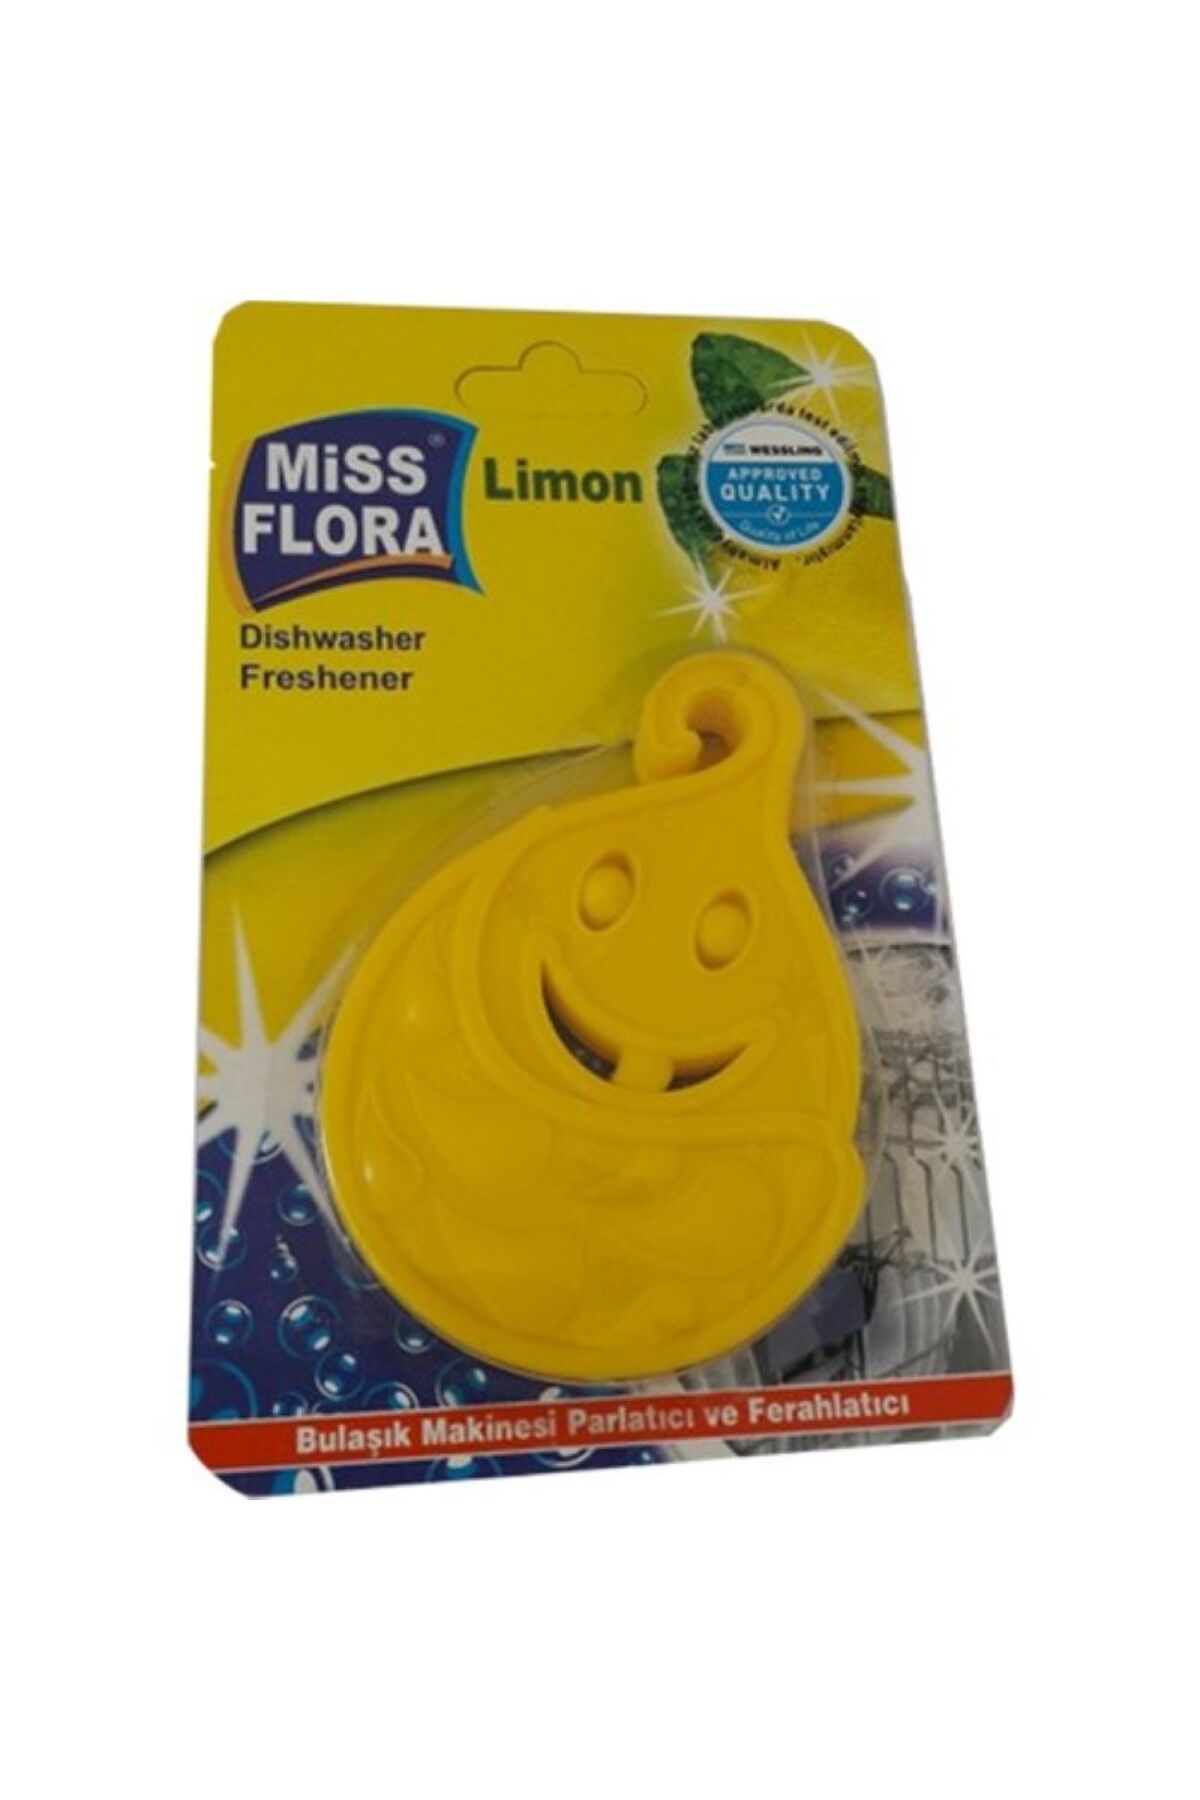 Miss Flora Limon kokulu Bulaşık makinası parlatıcı ferahlatıcı